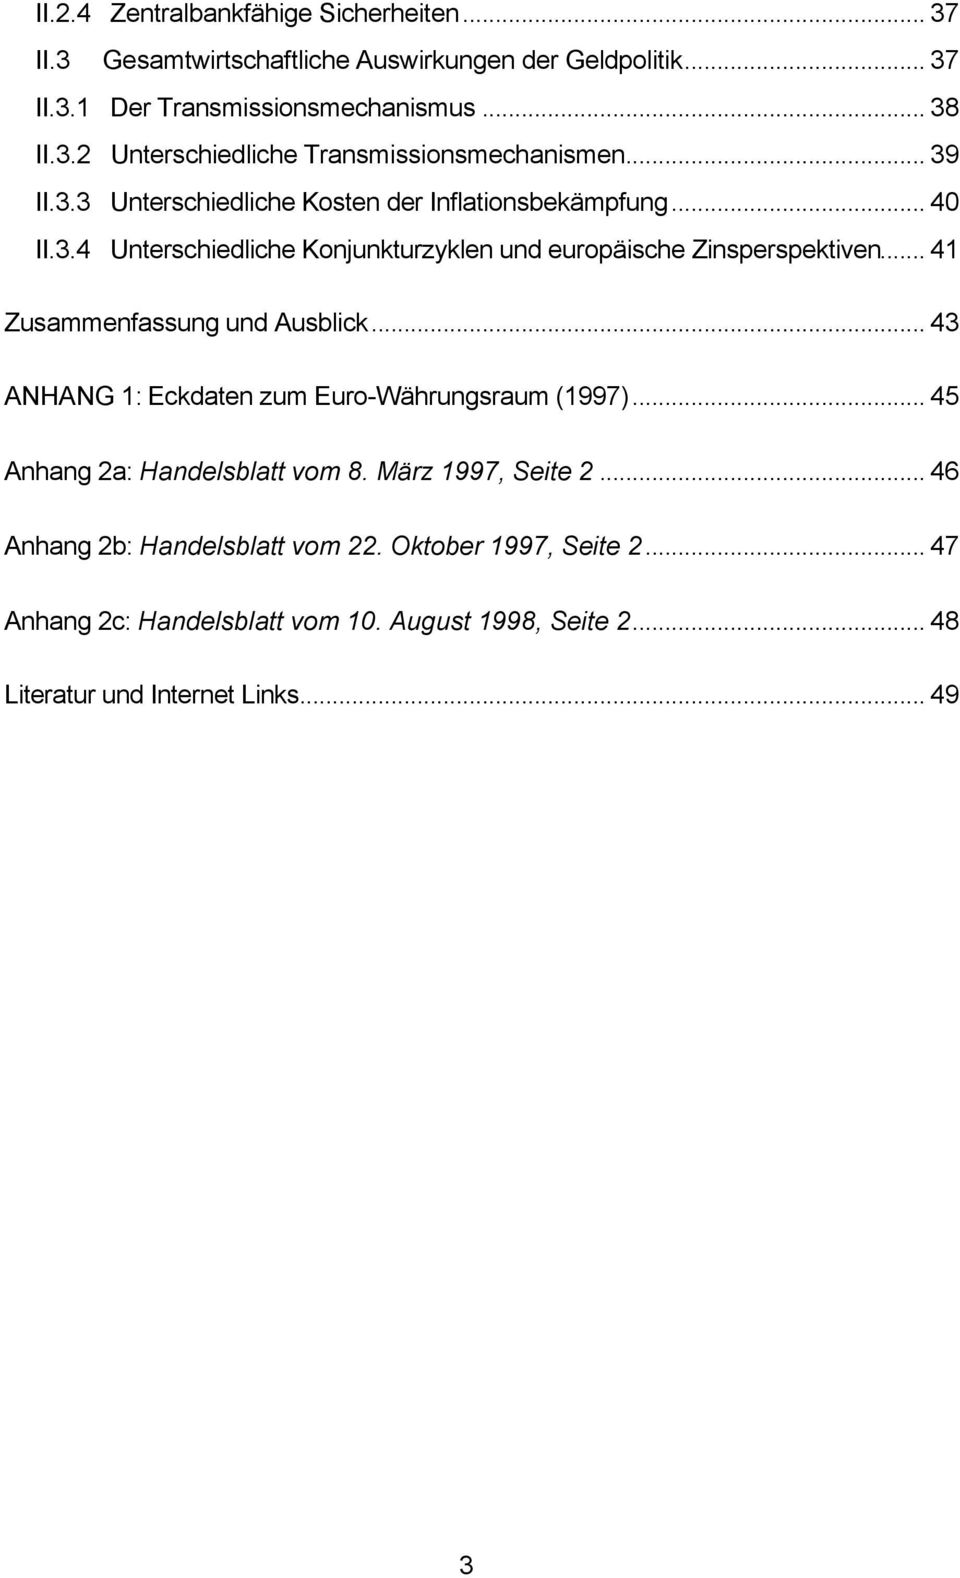 .. 41 Zusammenfassung und Ausblick... 43 ANHANG 1: Eckdaten zum Euro-Währungsraum (1997)... 45 Anhang 2a: Handelsblatt vom 8. März 1997, Seite 2.